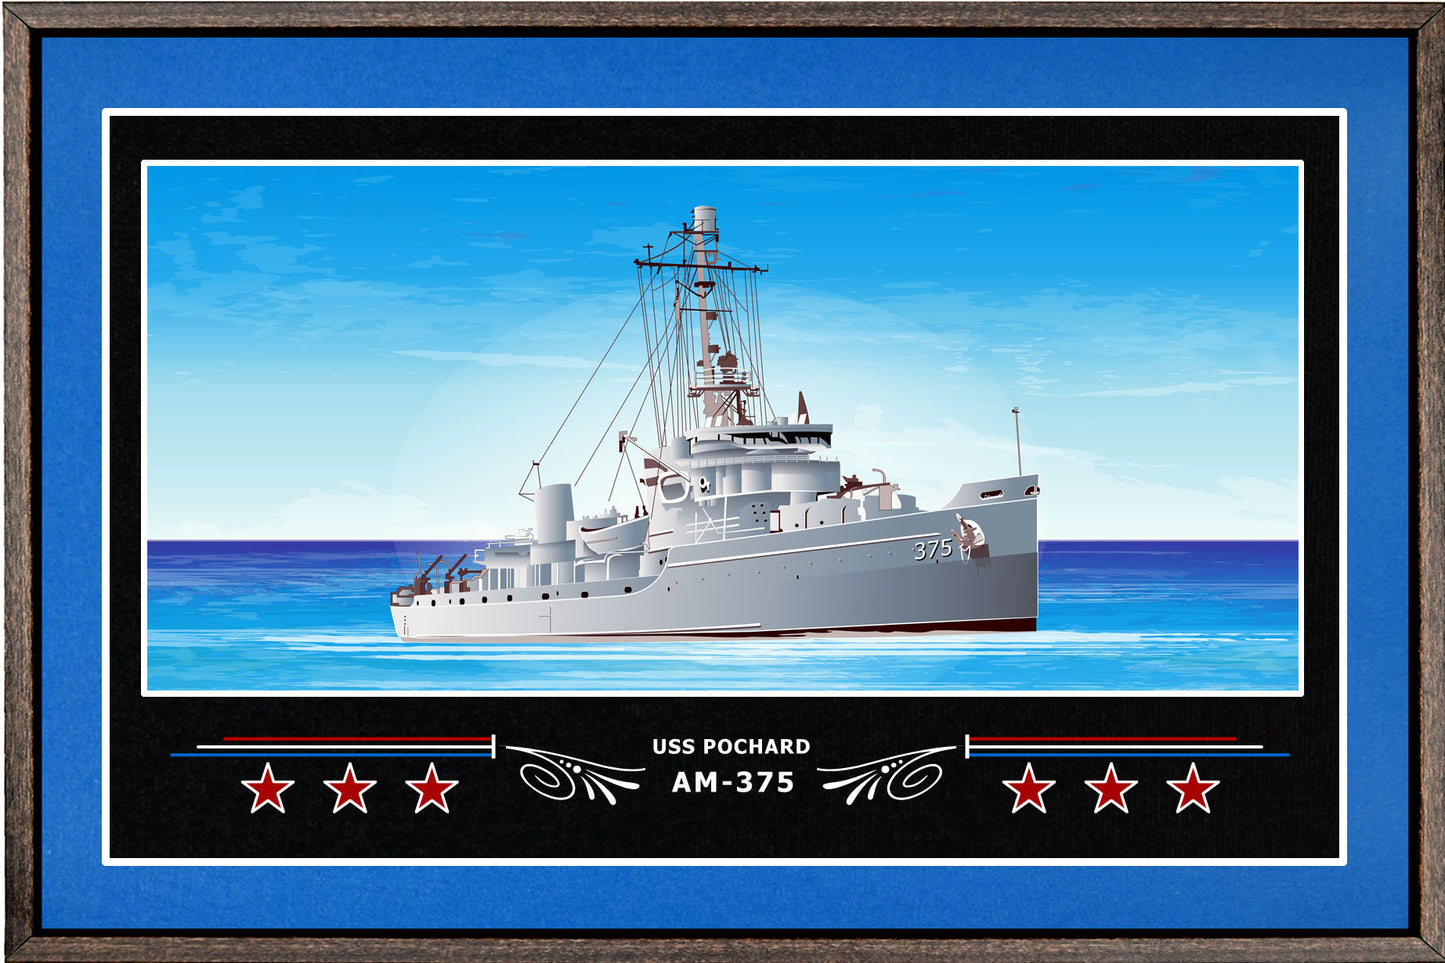 USS POCHARD AM 375 BOX FRAMED CANVAS ART BLUE